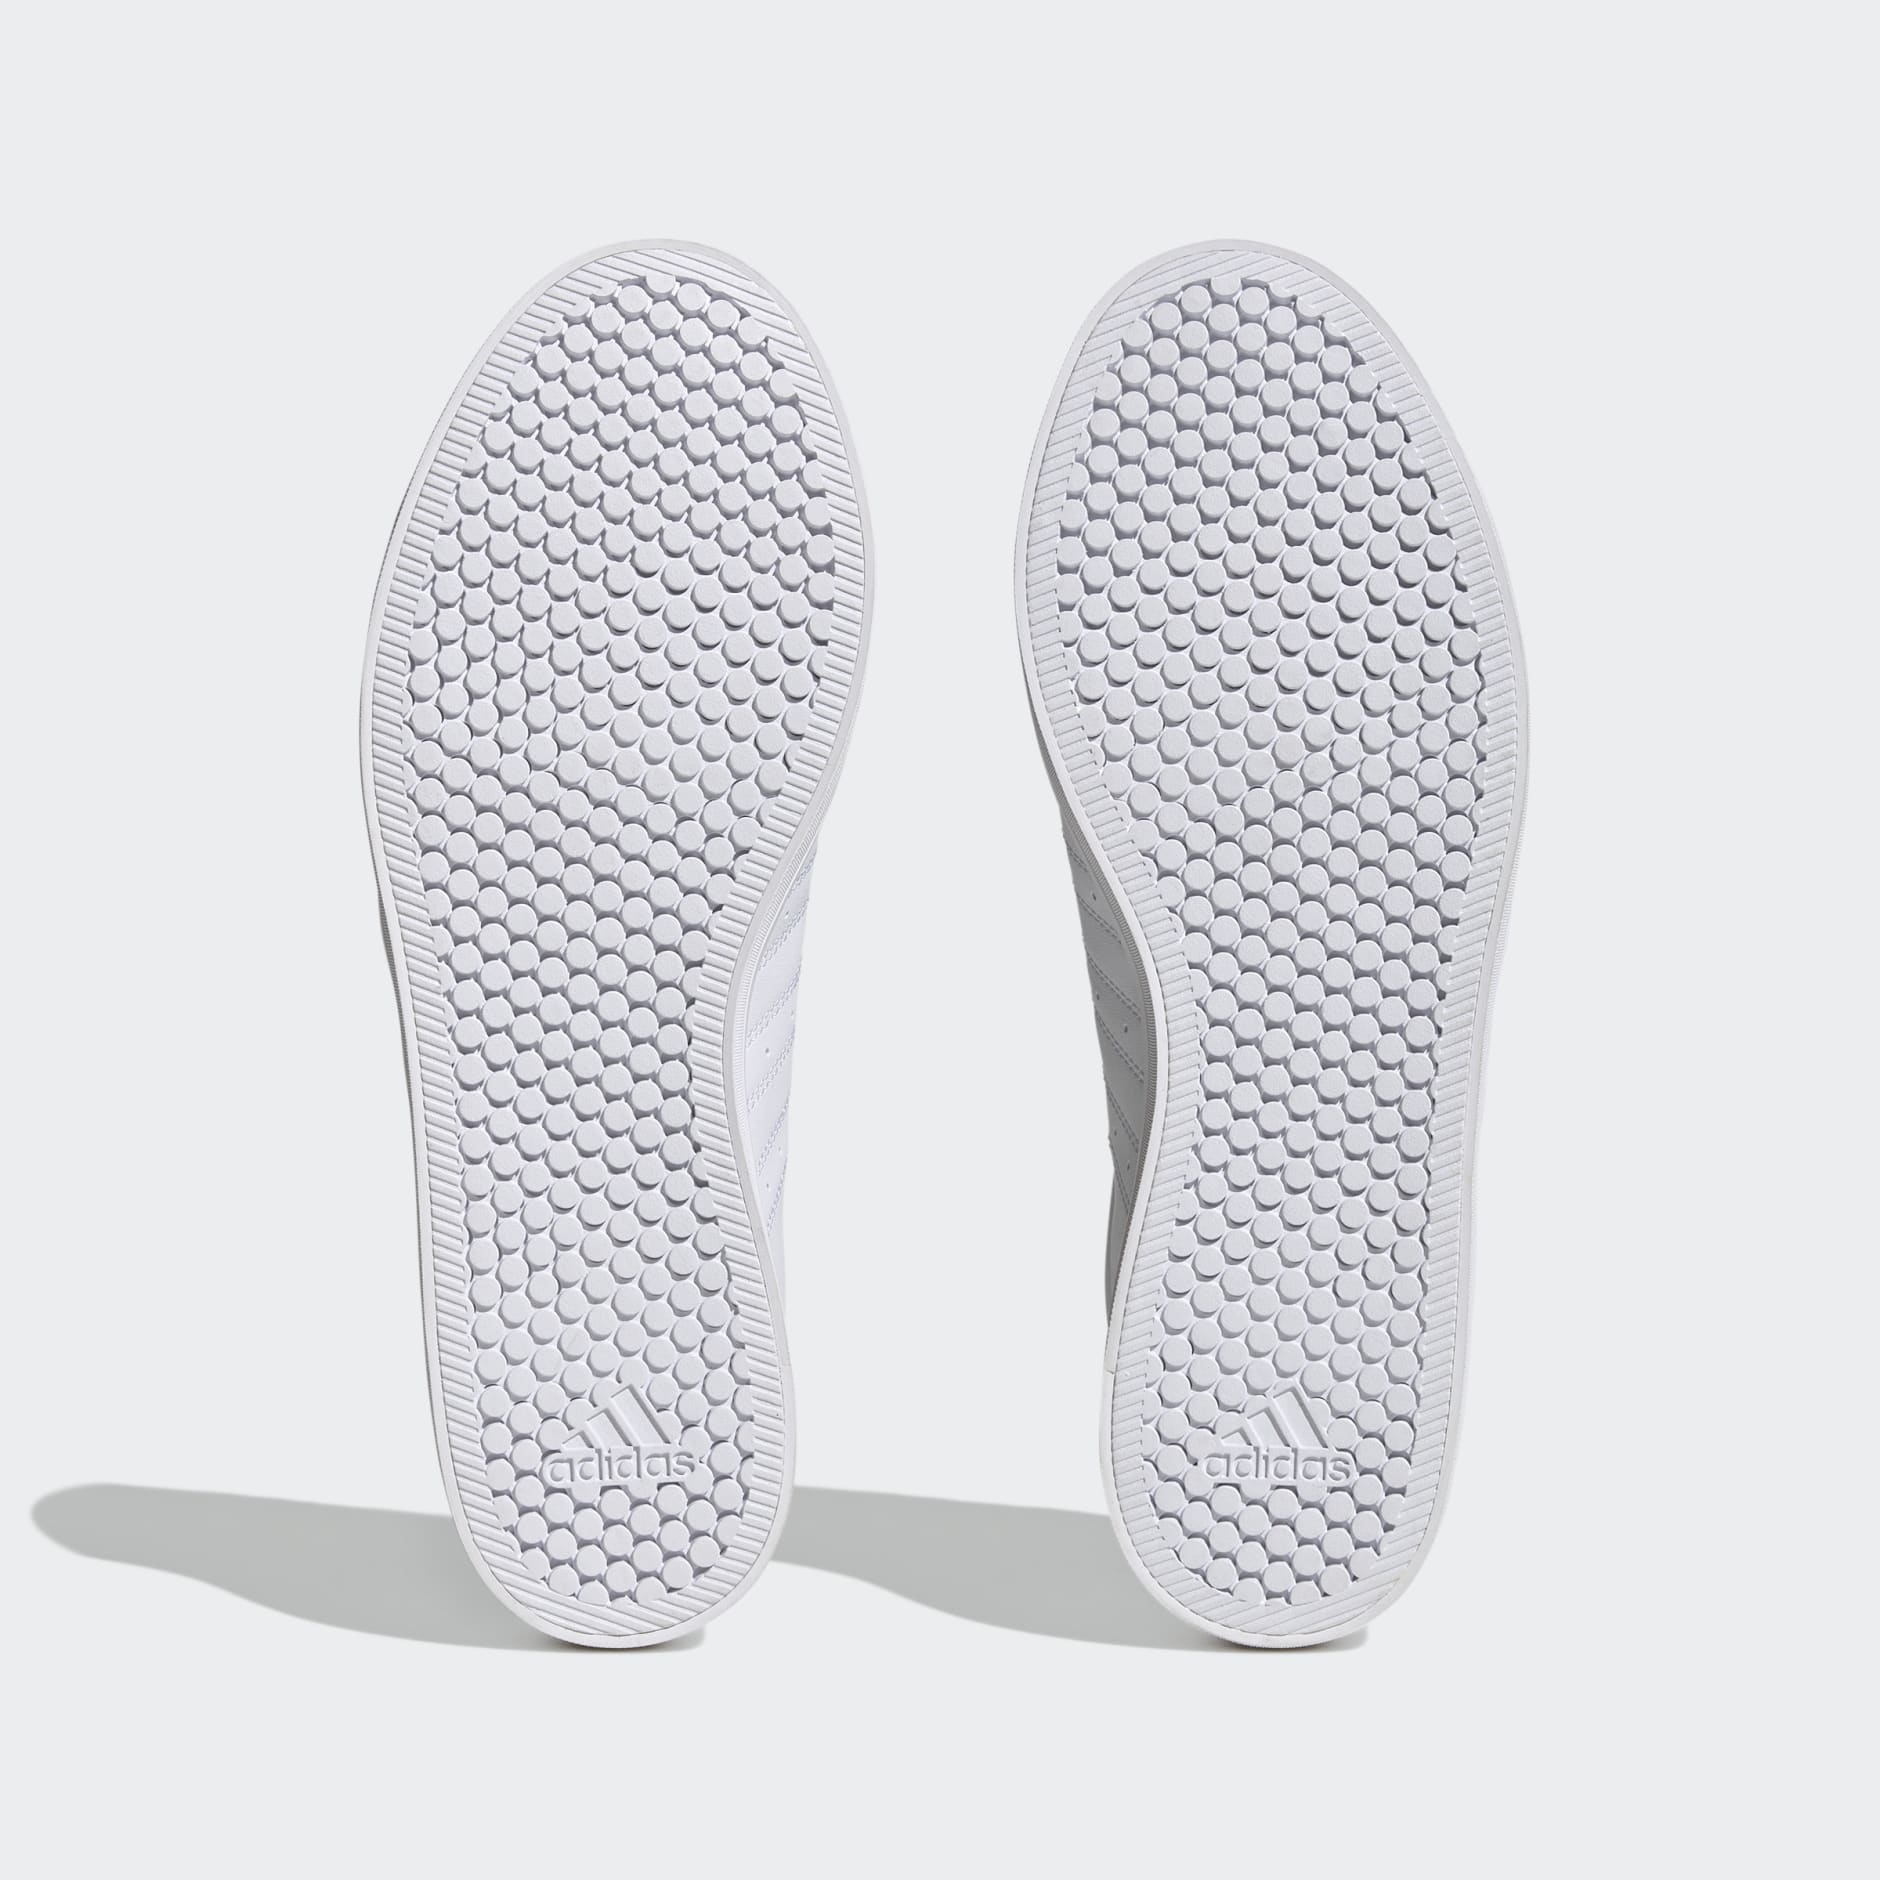 Zapatillas blancas para hombre Adidas VS Pace online en MEGACALZADO